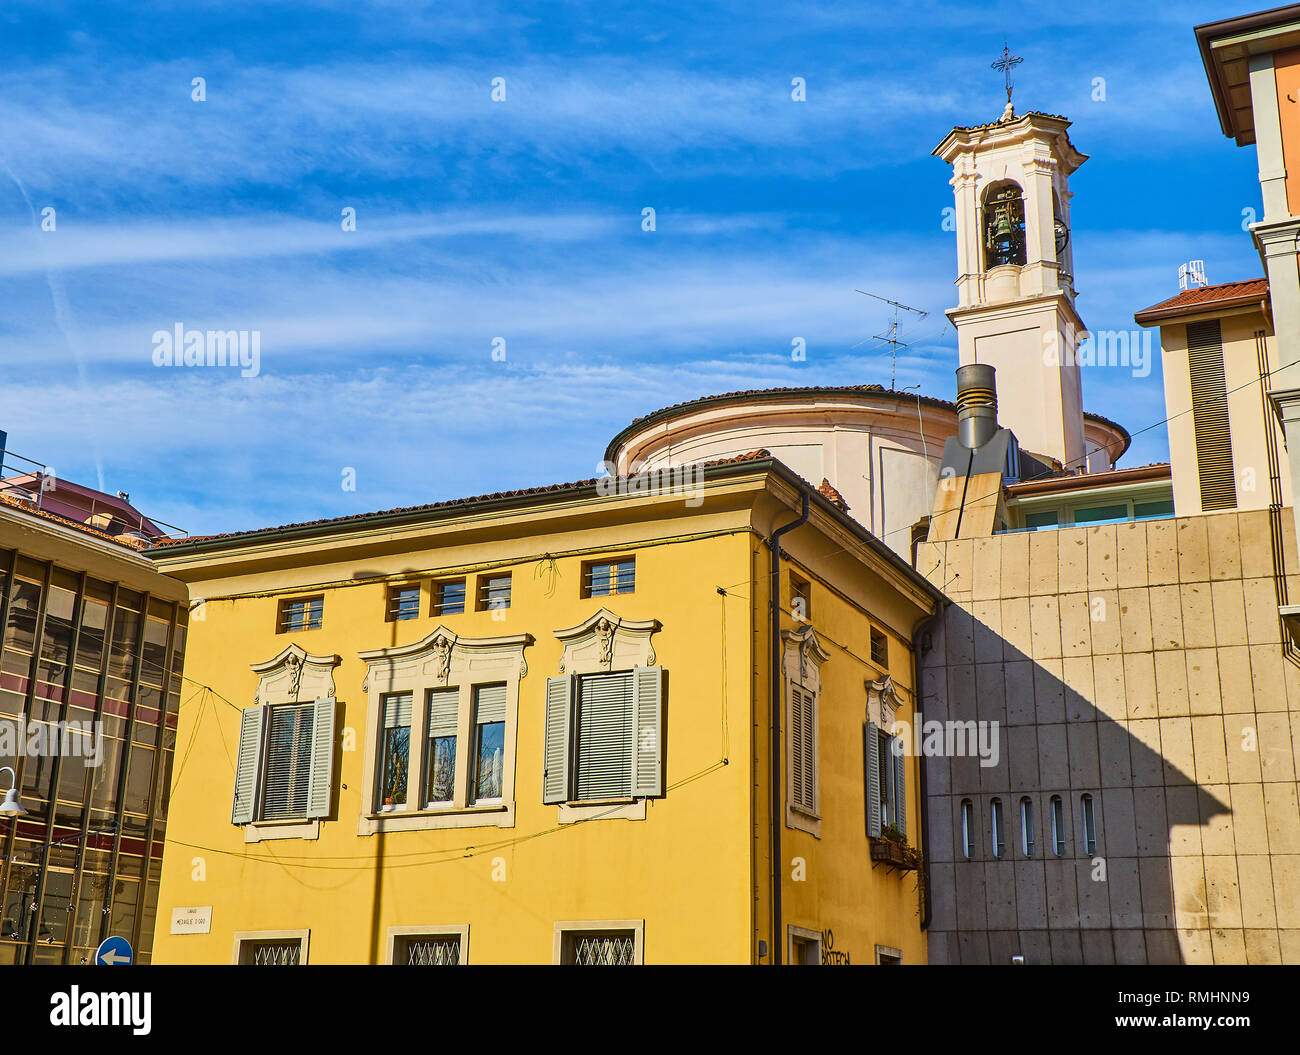 Die neoklassische Fassade eines Europäischen Gebäude mit dem Glockenturm und Kuppel der Chiesa della Madonna dello Spasimo Kirche. Bergamo, Lombardei, Italien. Stockfoto